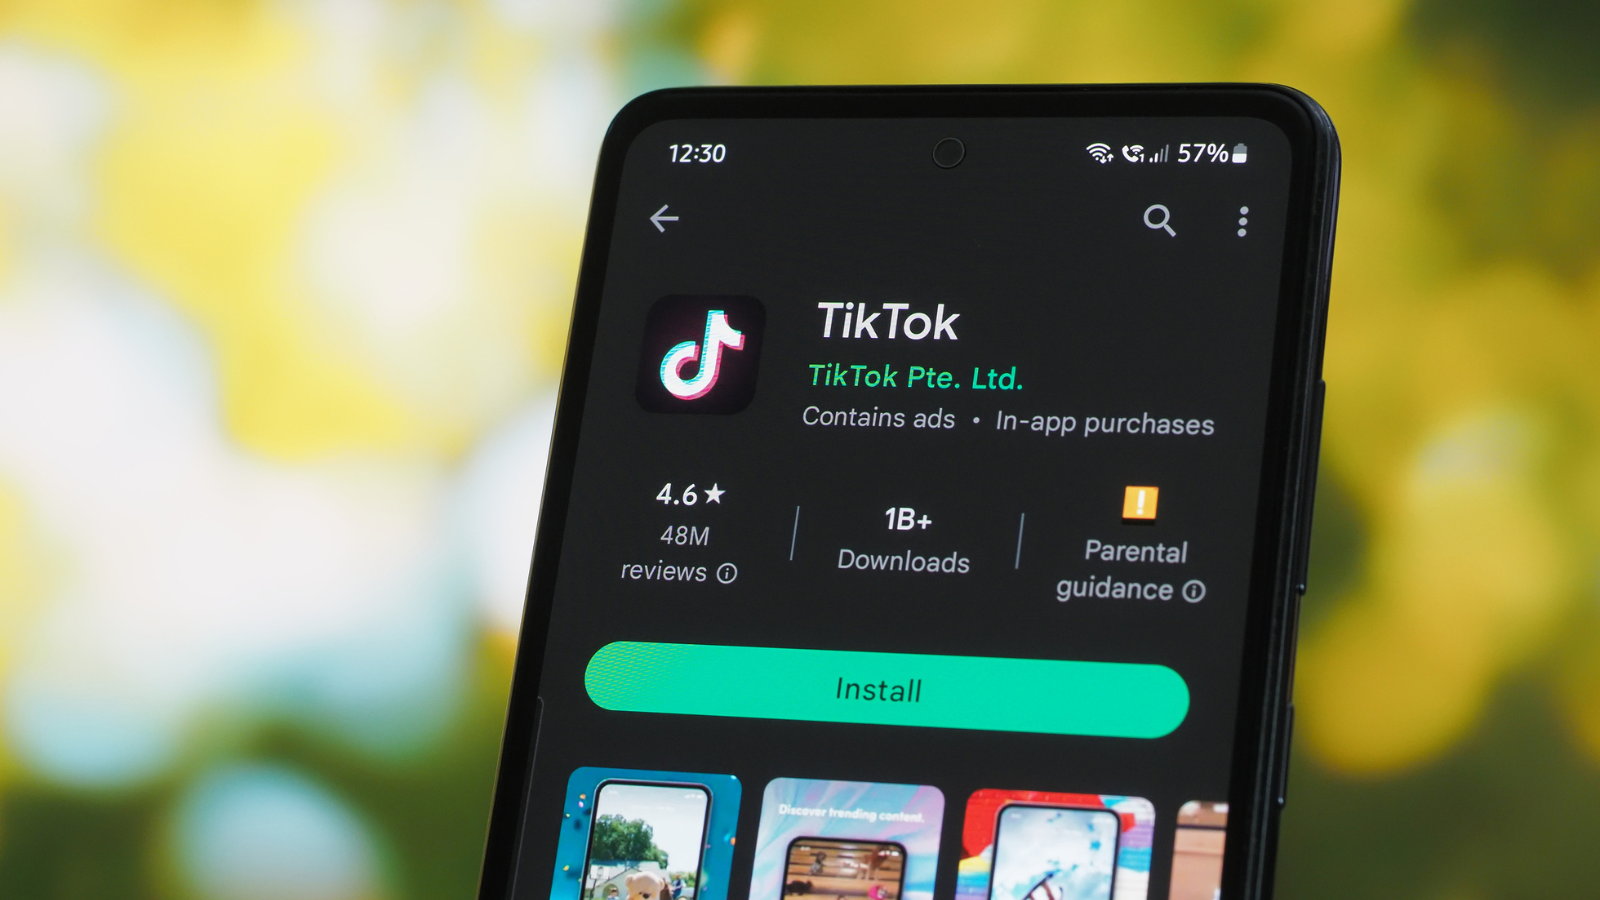 Phone with TikTok app open